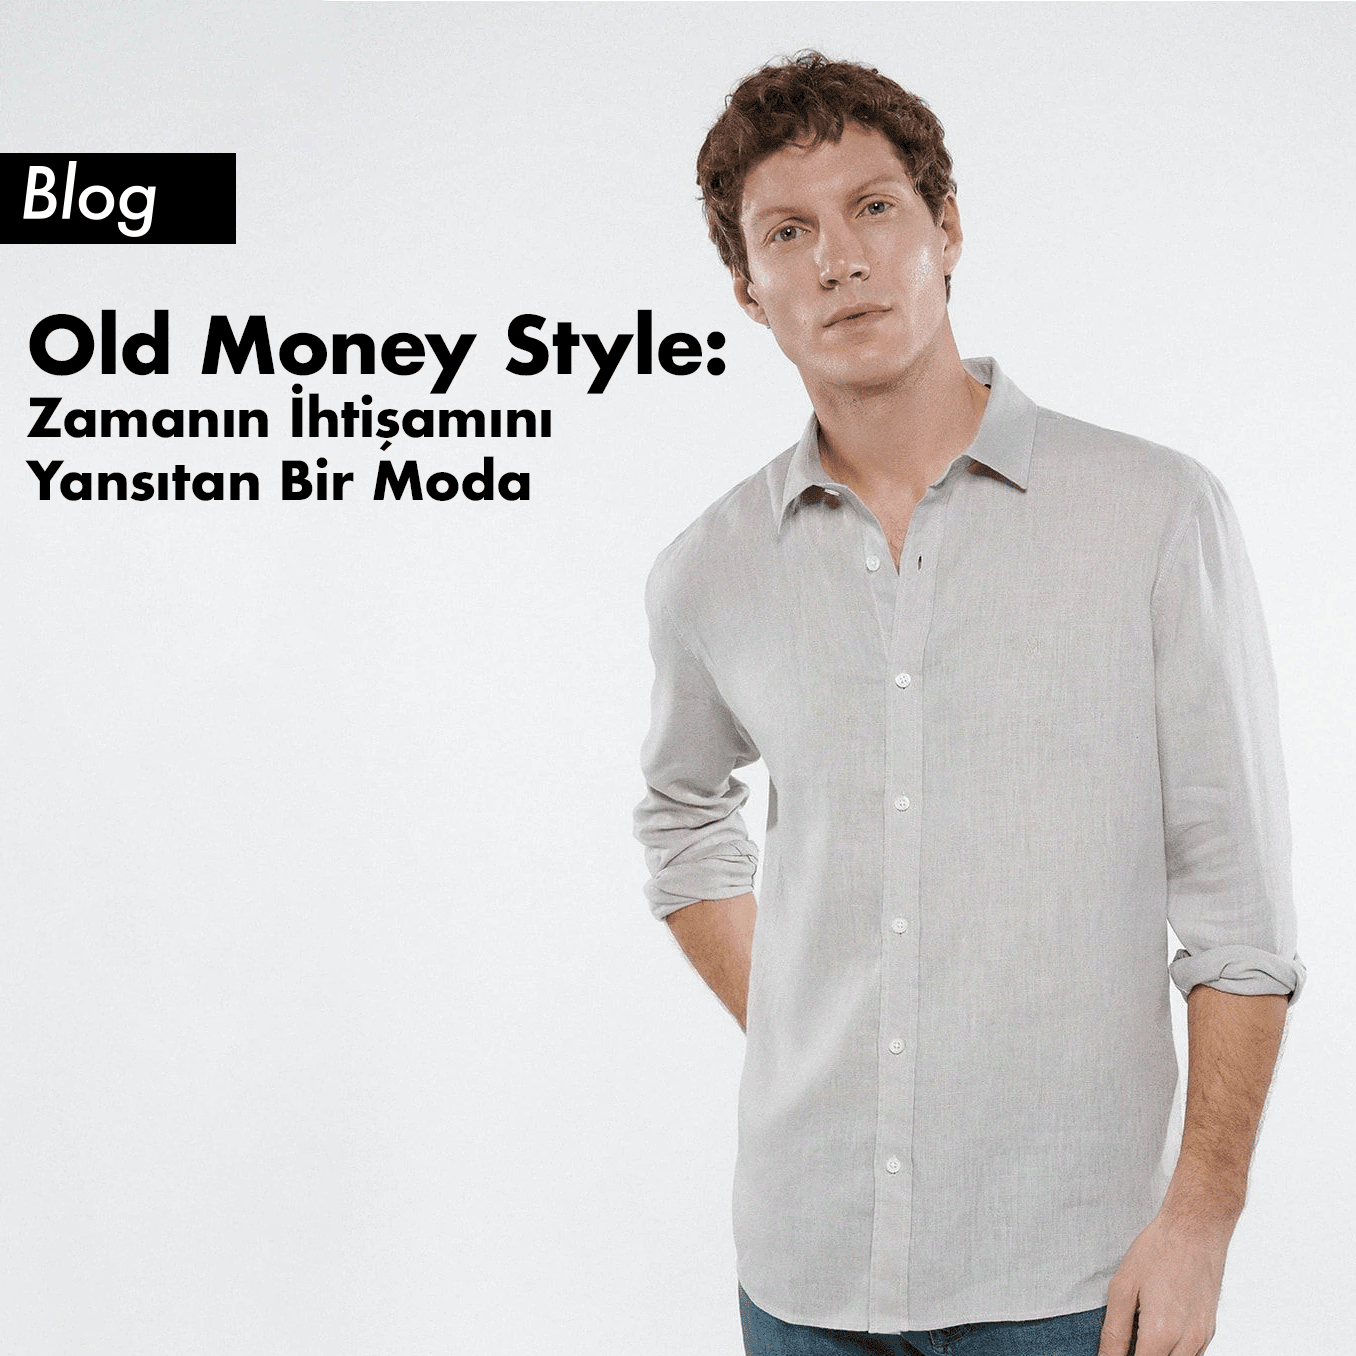 Old Money Style Nedir? - Zamanın İhtişamını Yansıtan Bir Moda